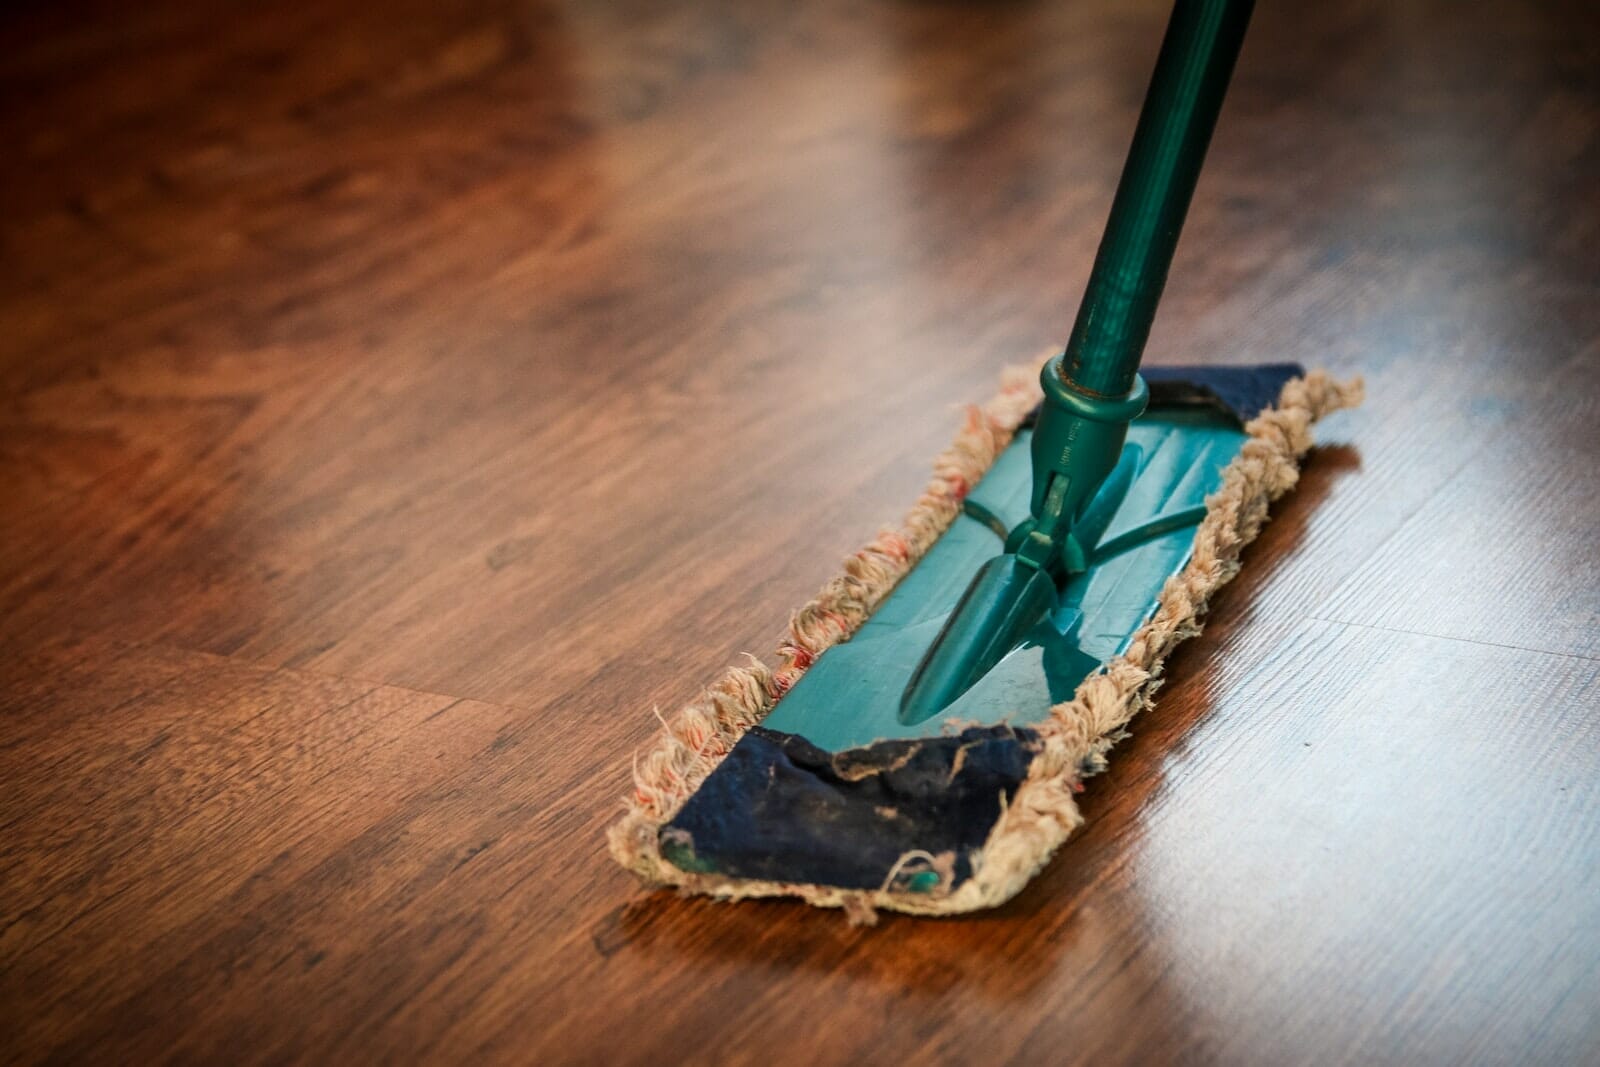 Easiest Floor to Clean